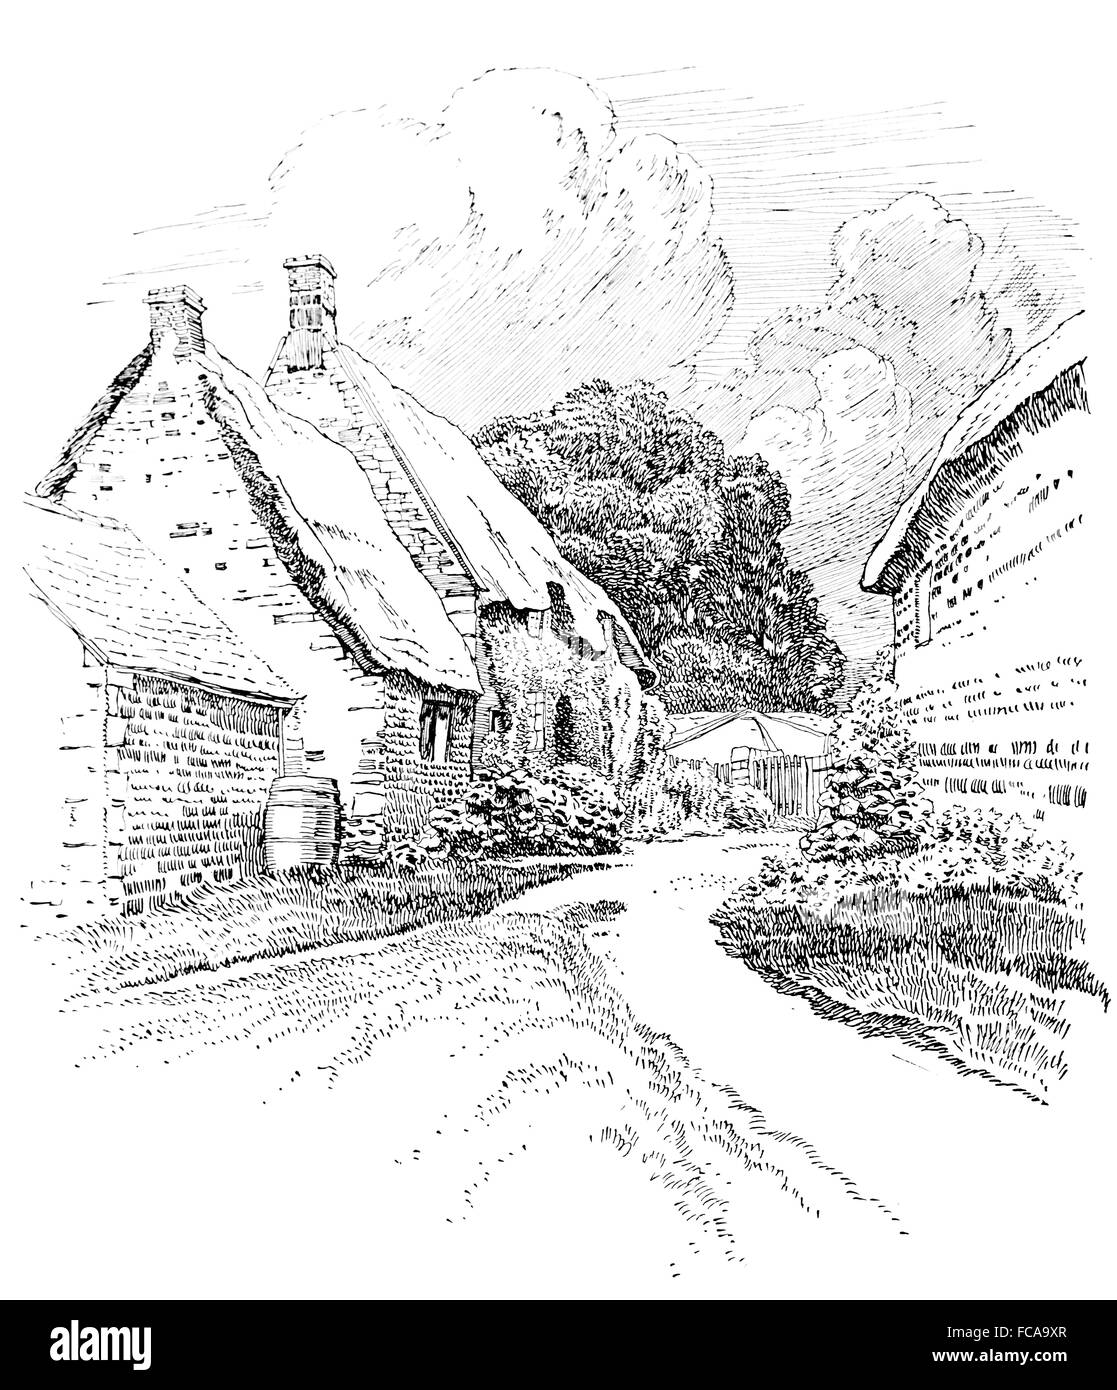 Regno Unito, Inghilterra, Northamptonshire, Wilbarston, cottage con il tetto di paglia giardino 1911 Illustrazione di linea da, Sydney R Jones Foto Stock